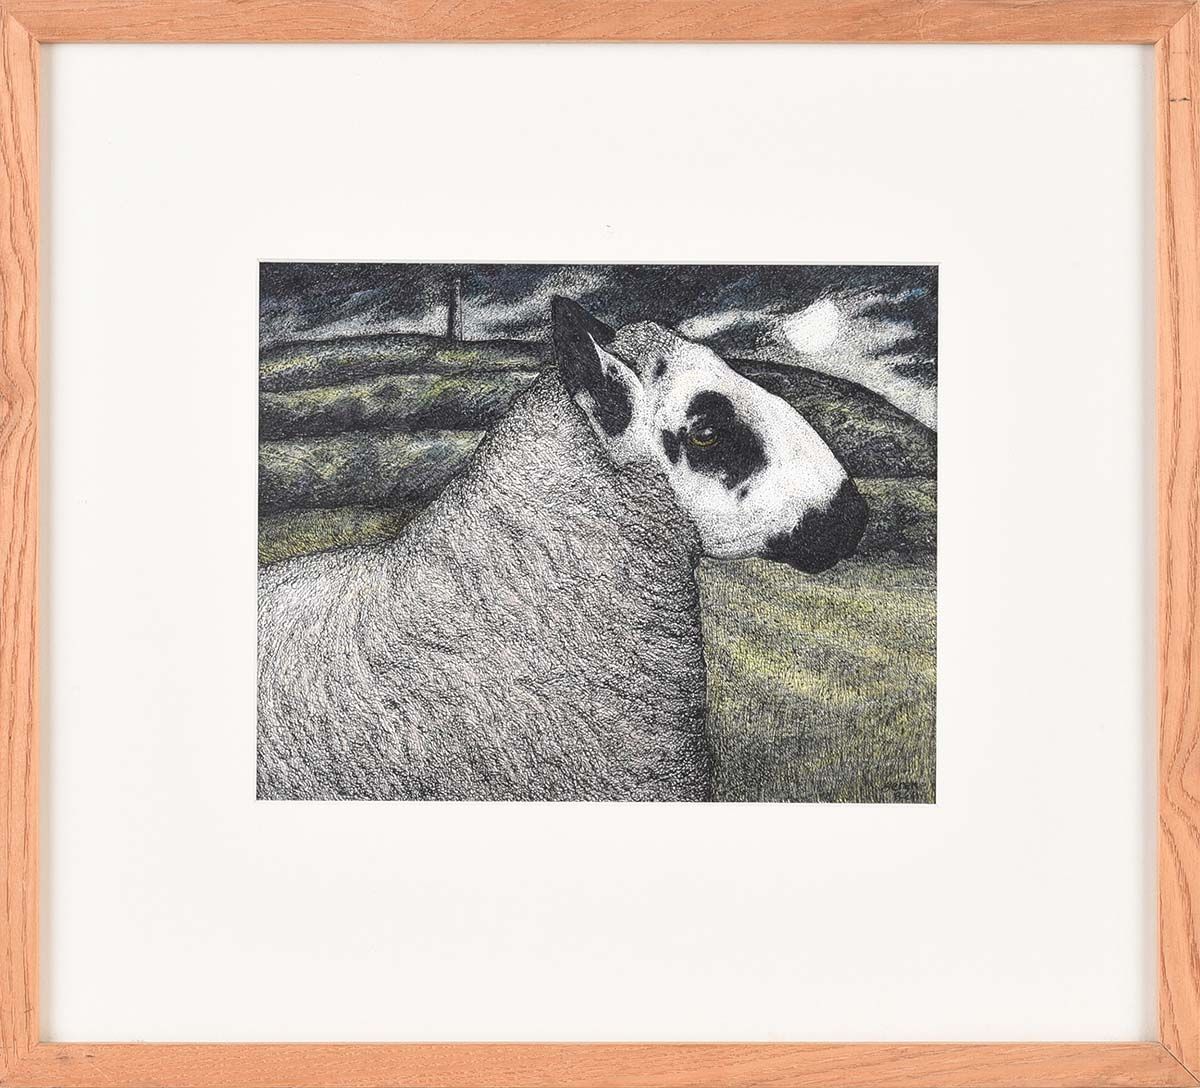 KERRY HILL RAM by Seren Bell at Ross's Online Art Auctions